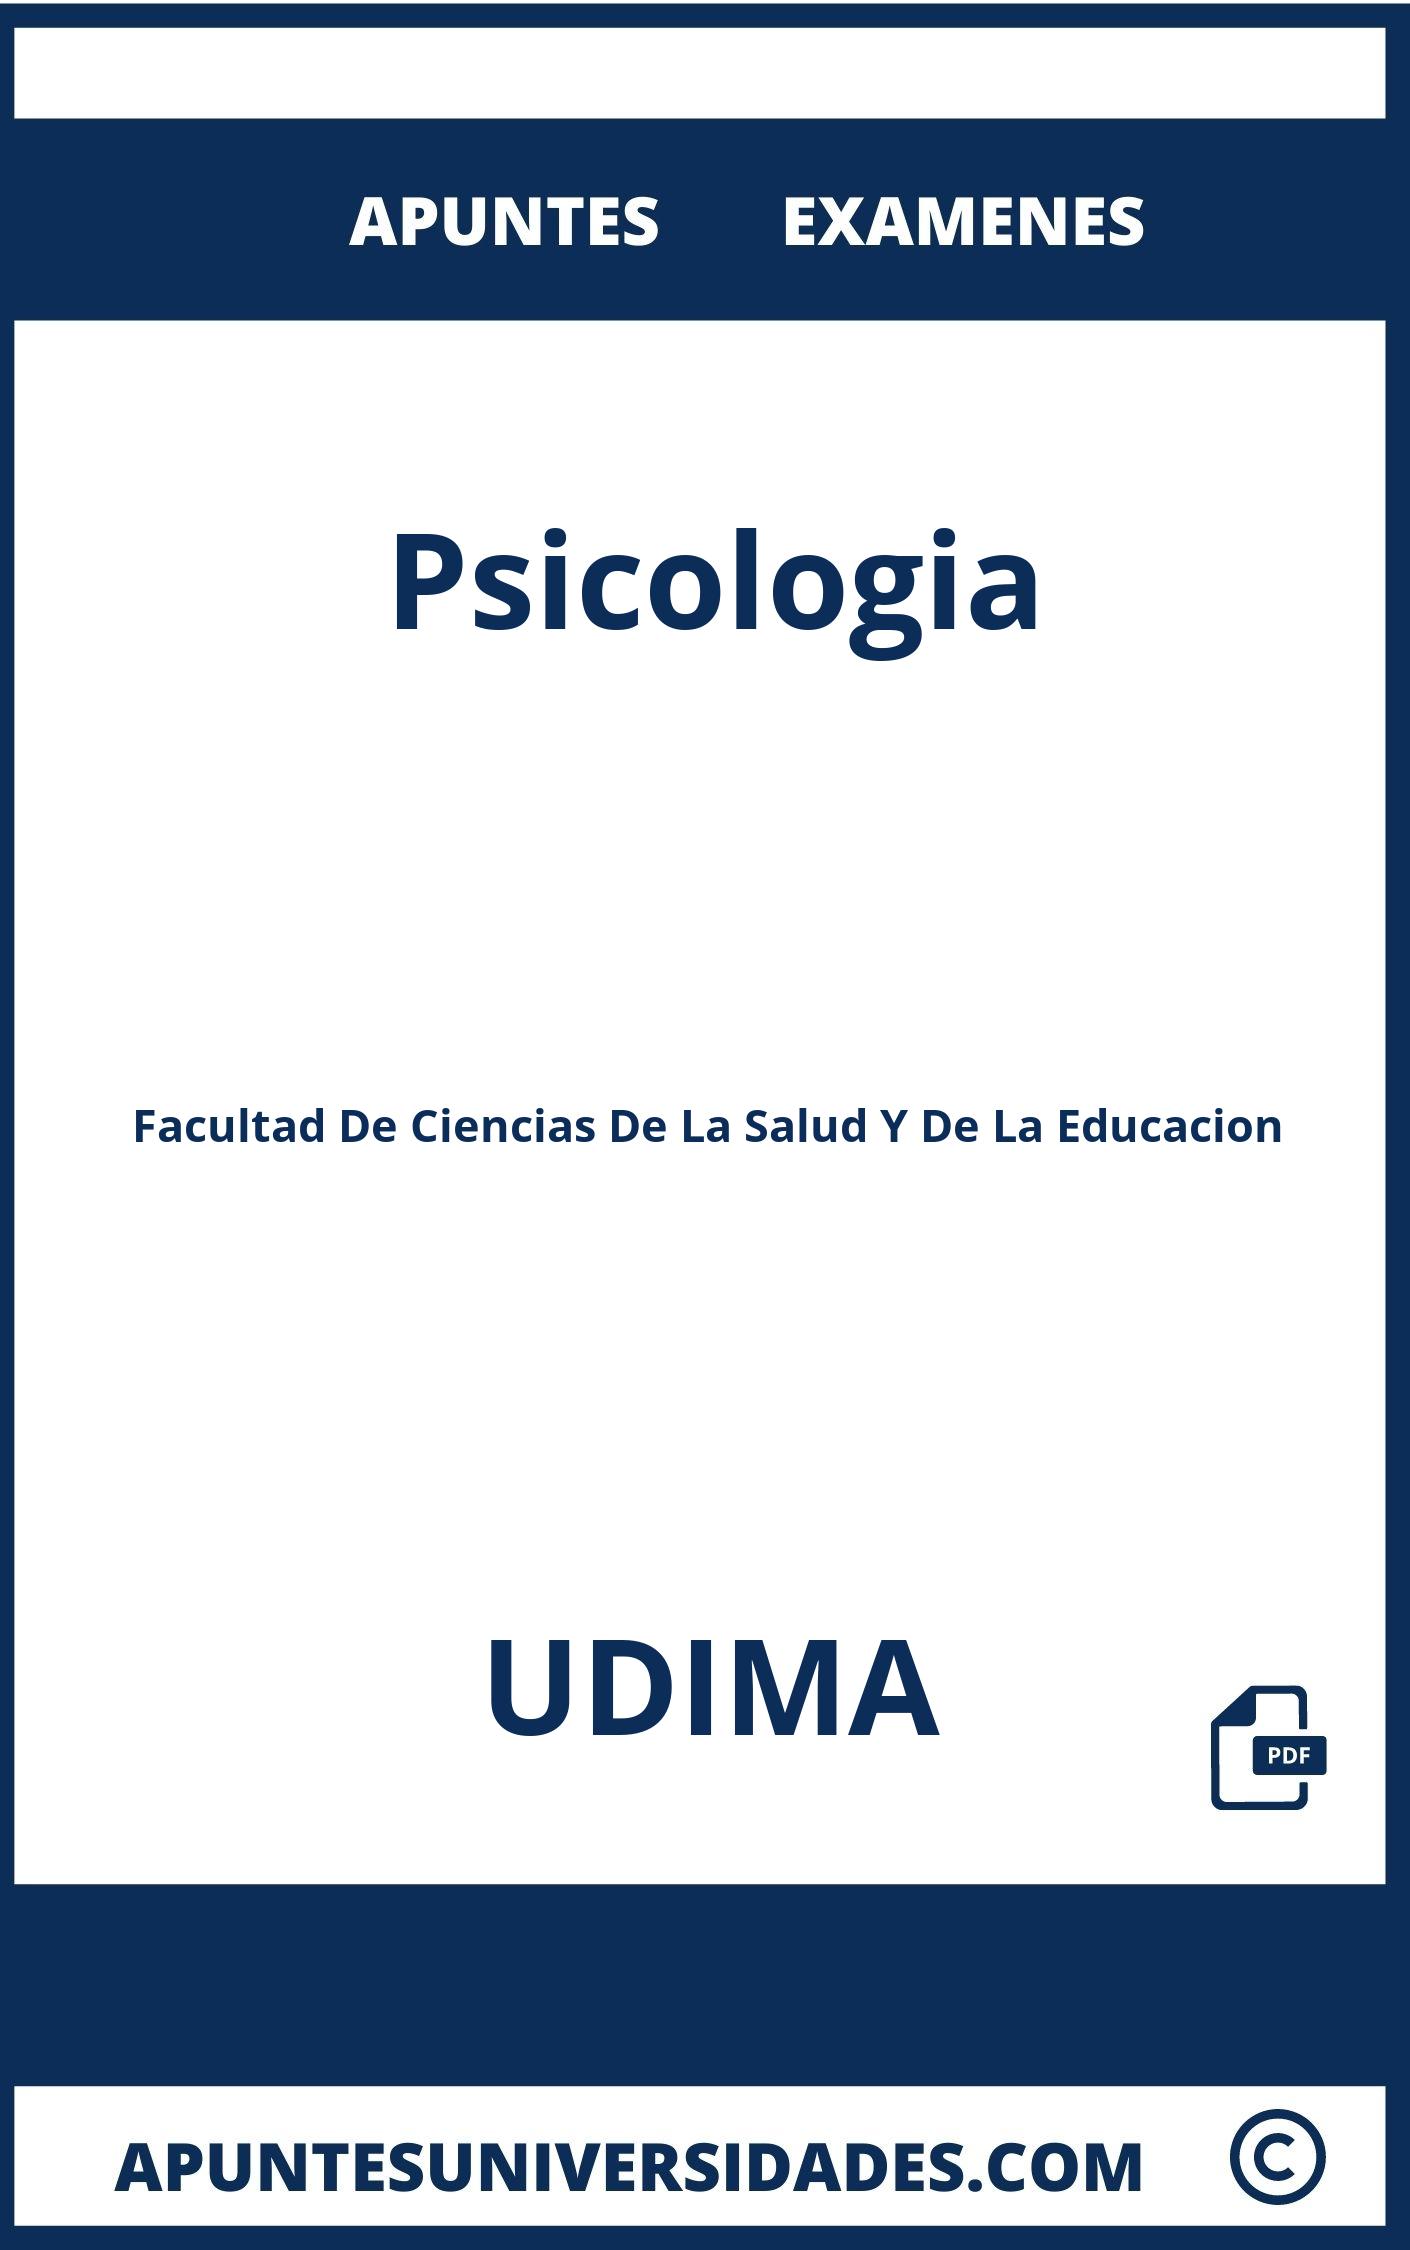 Psicologia UDIMA Examenes Apuntes